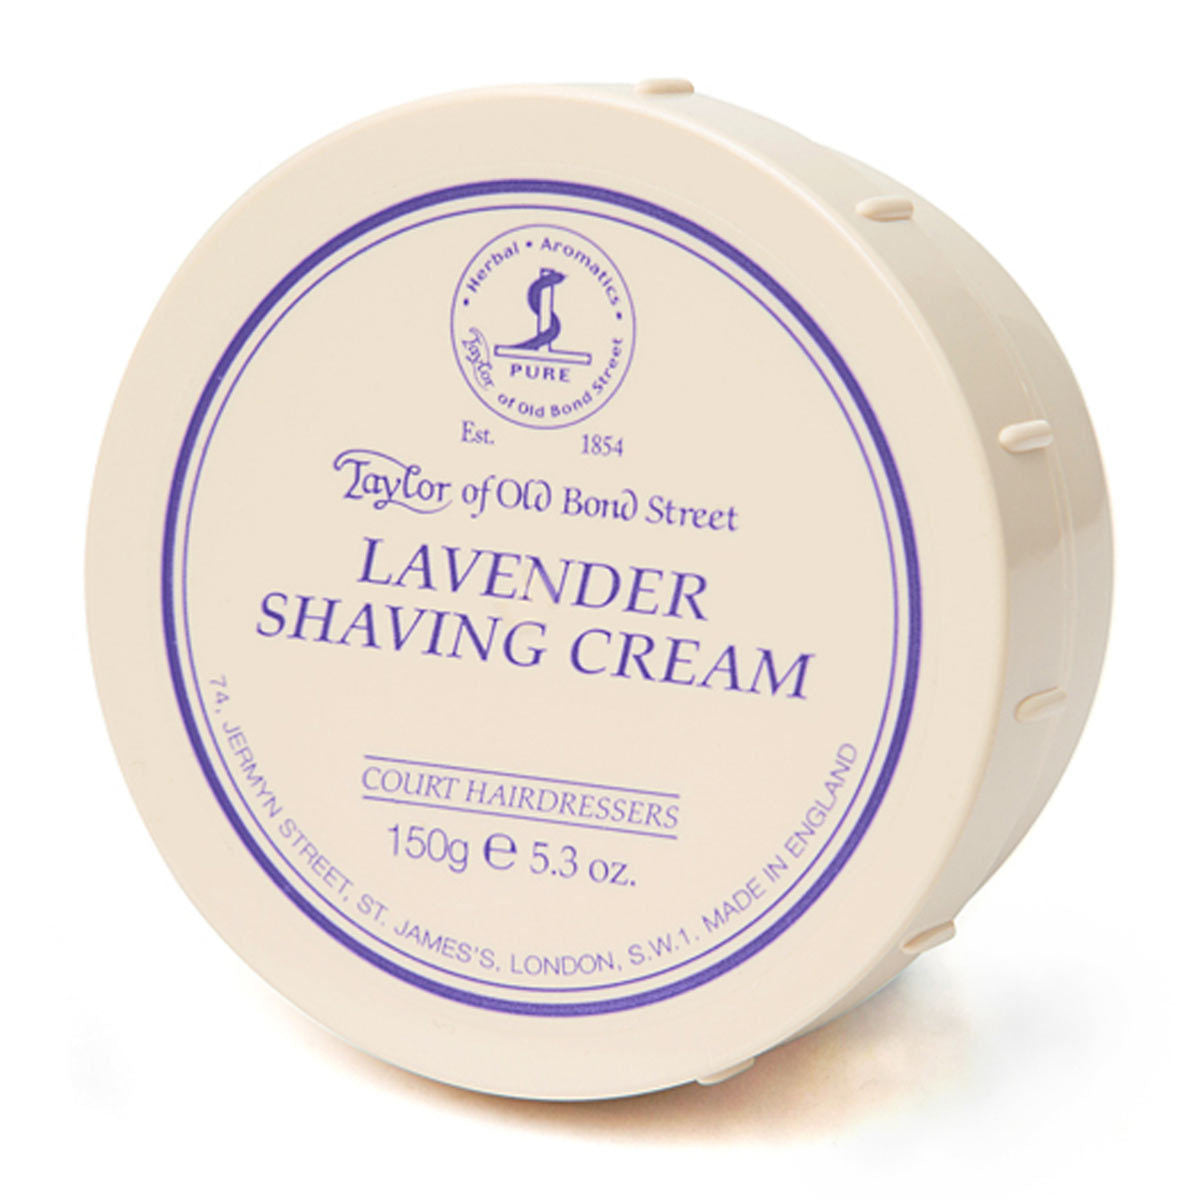 Primary image of Lavender Shaving Cream Jar